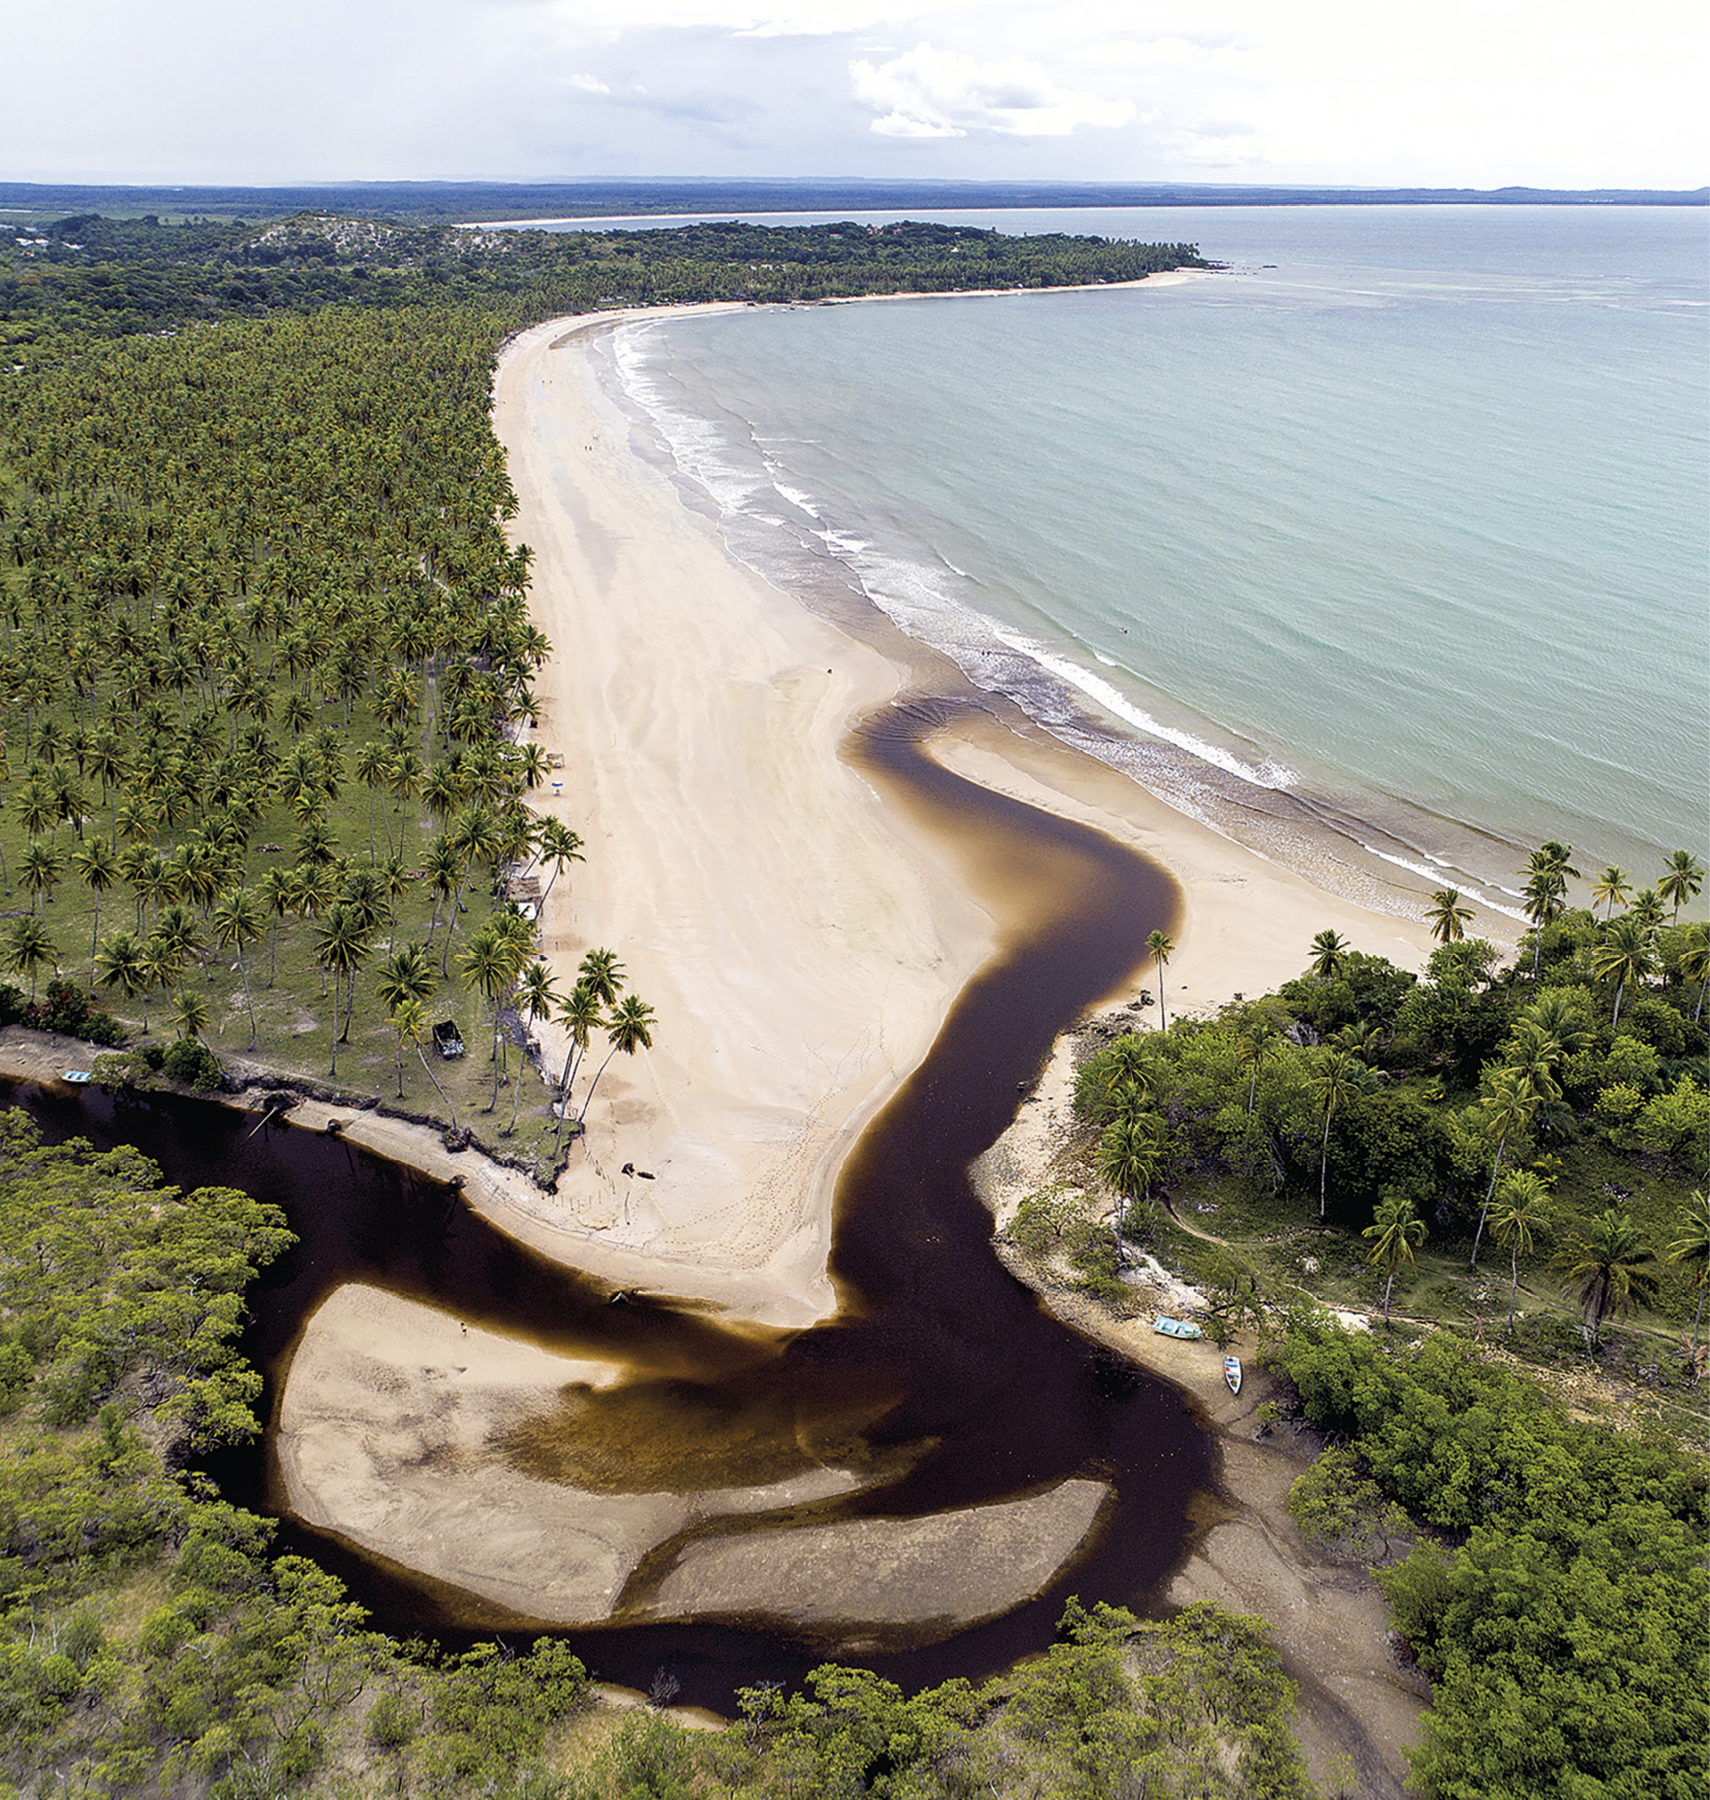 Fotografia. Na parte inferior, vista para um rio margeado por areia e com águas escuras desembocando no mar. À esquerda, vegetação com muitos coqueiros. Ao centro, extensa faixa de areia e, à direita, o mar em tons de verde claro.